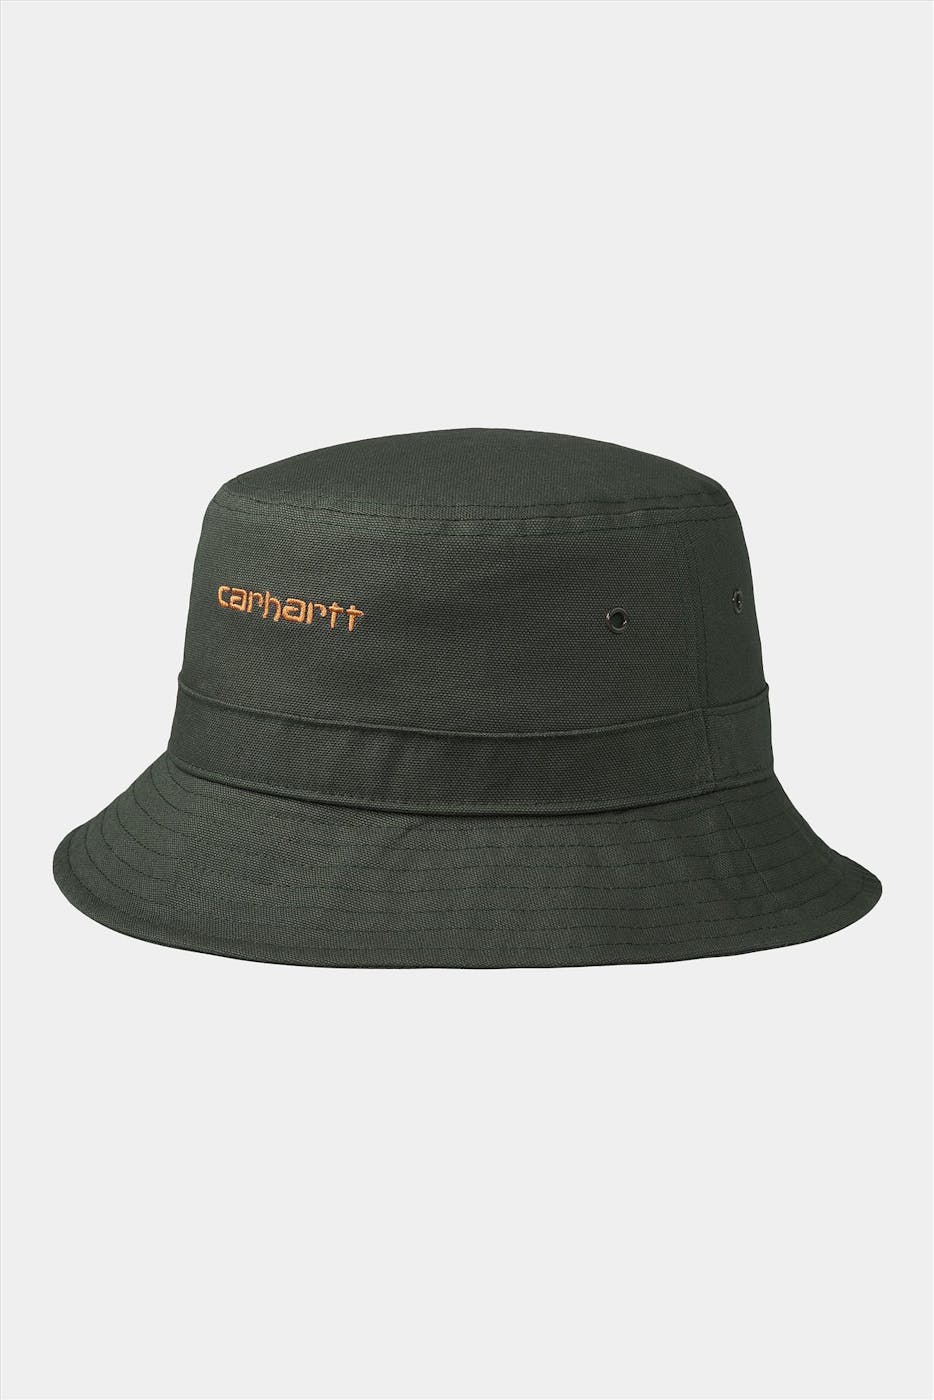 Carhartt WIP - Kaki Script bucket hat